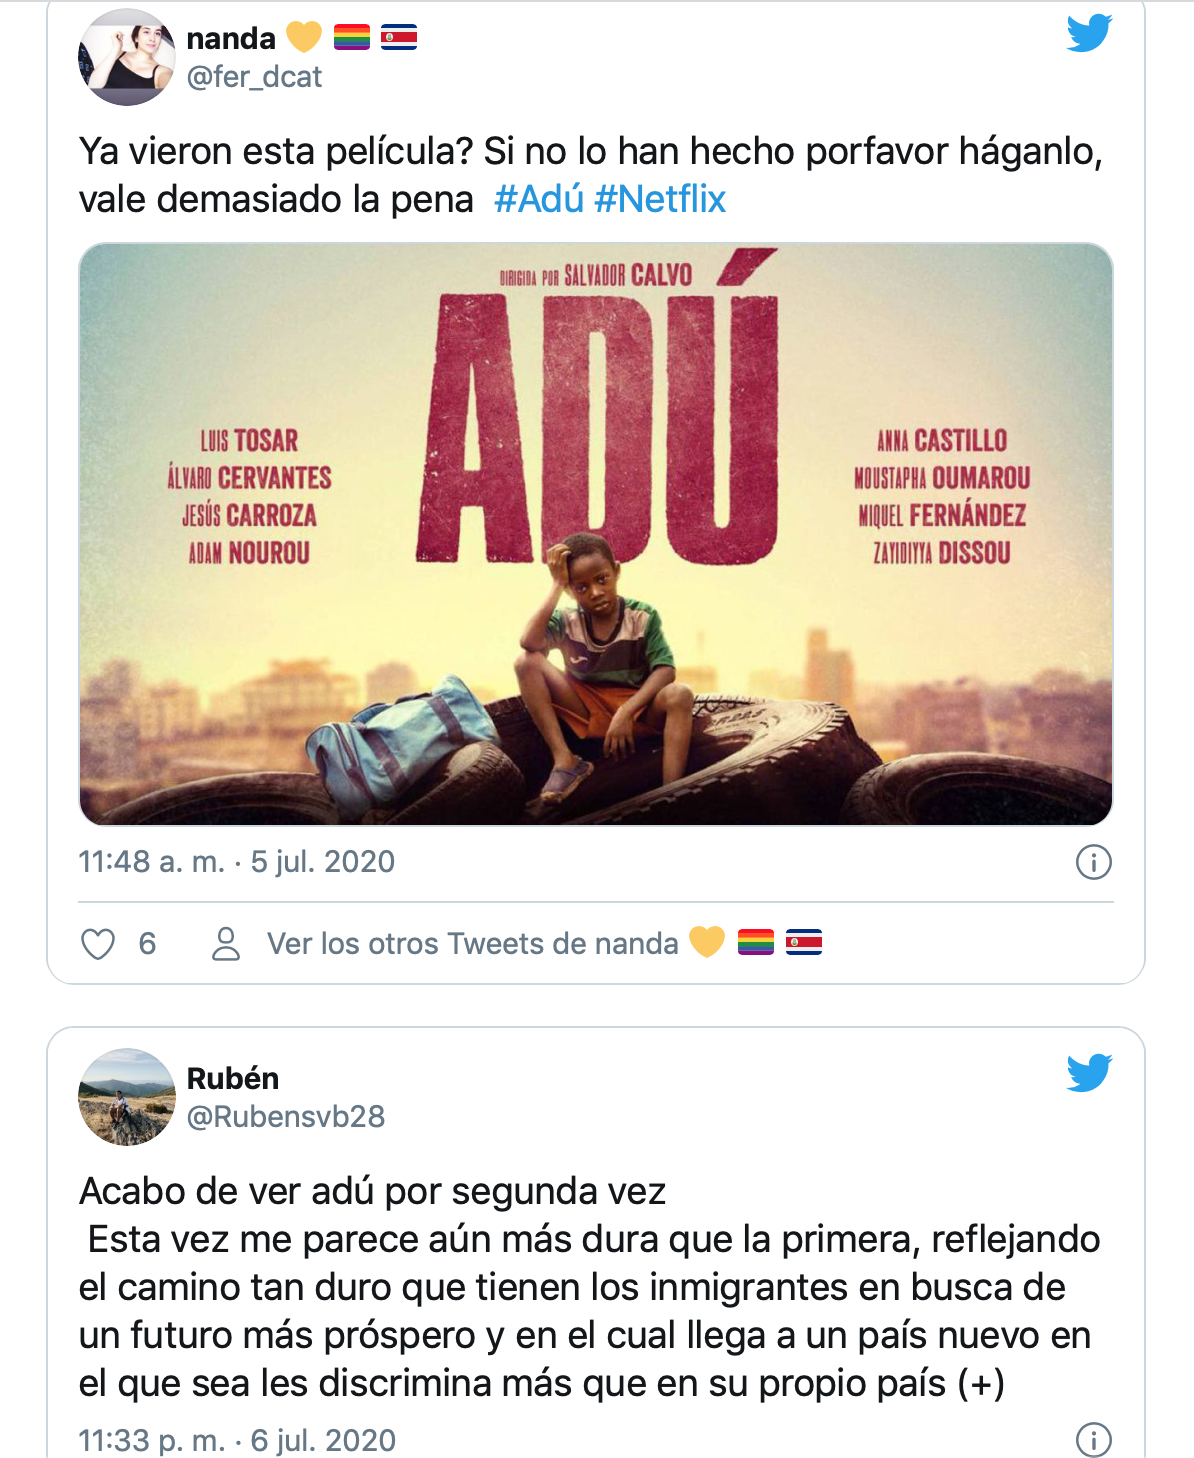 'Adú', la película que está emocionando a los usuarios de Netflix